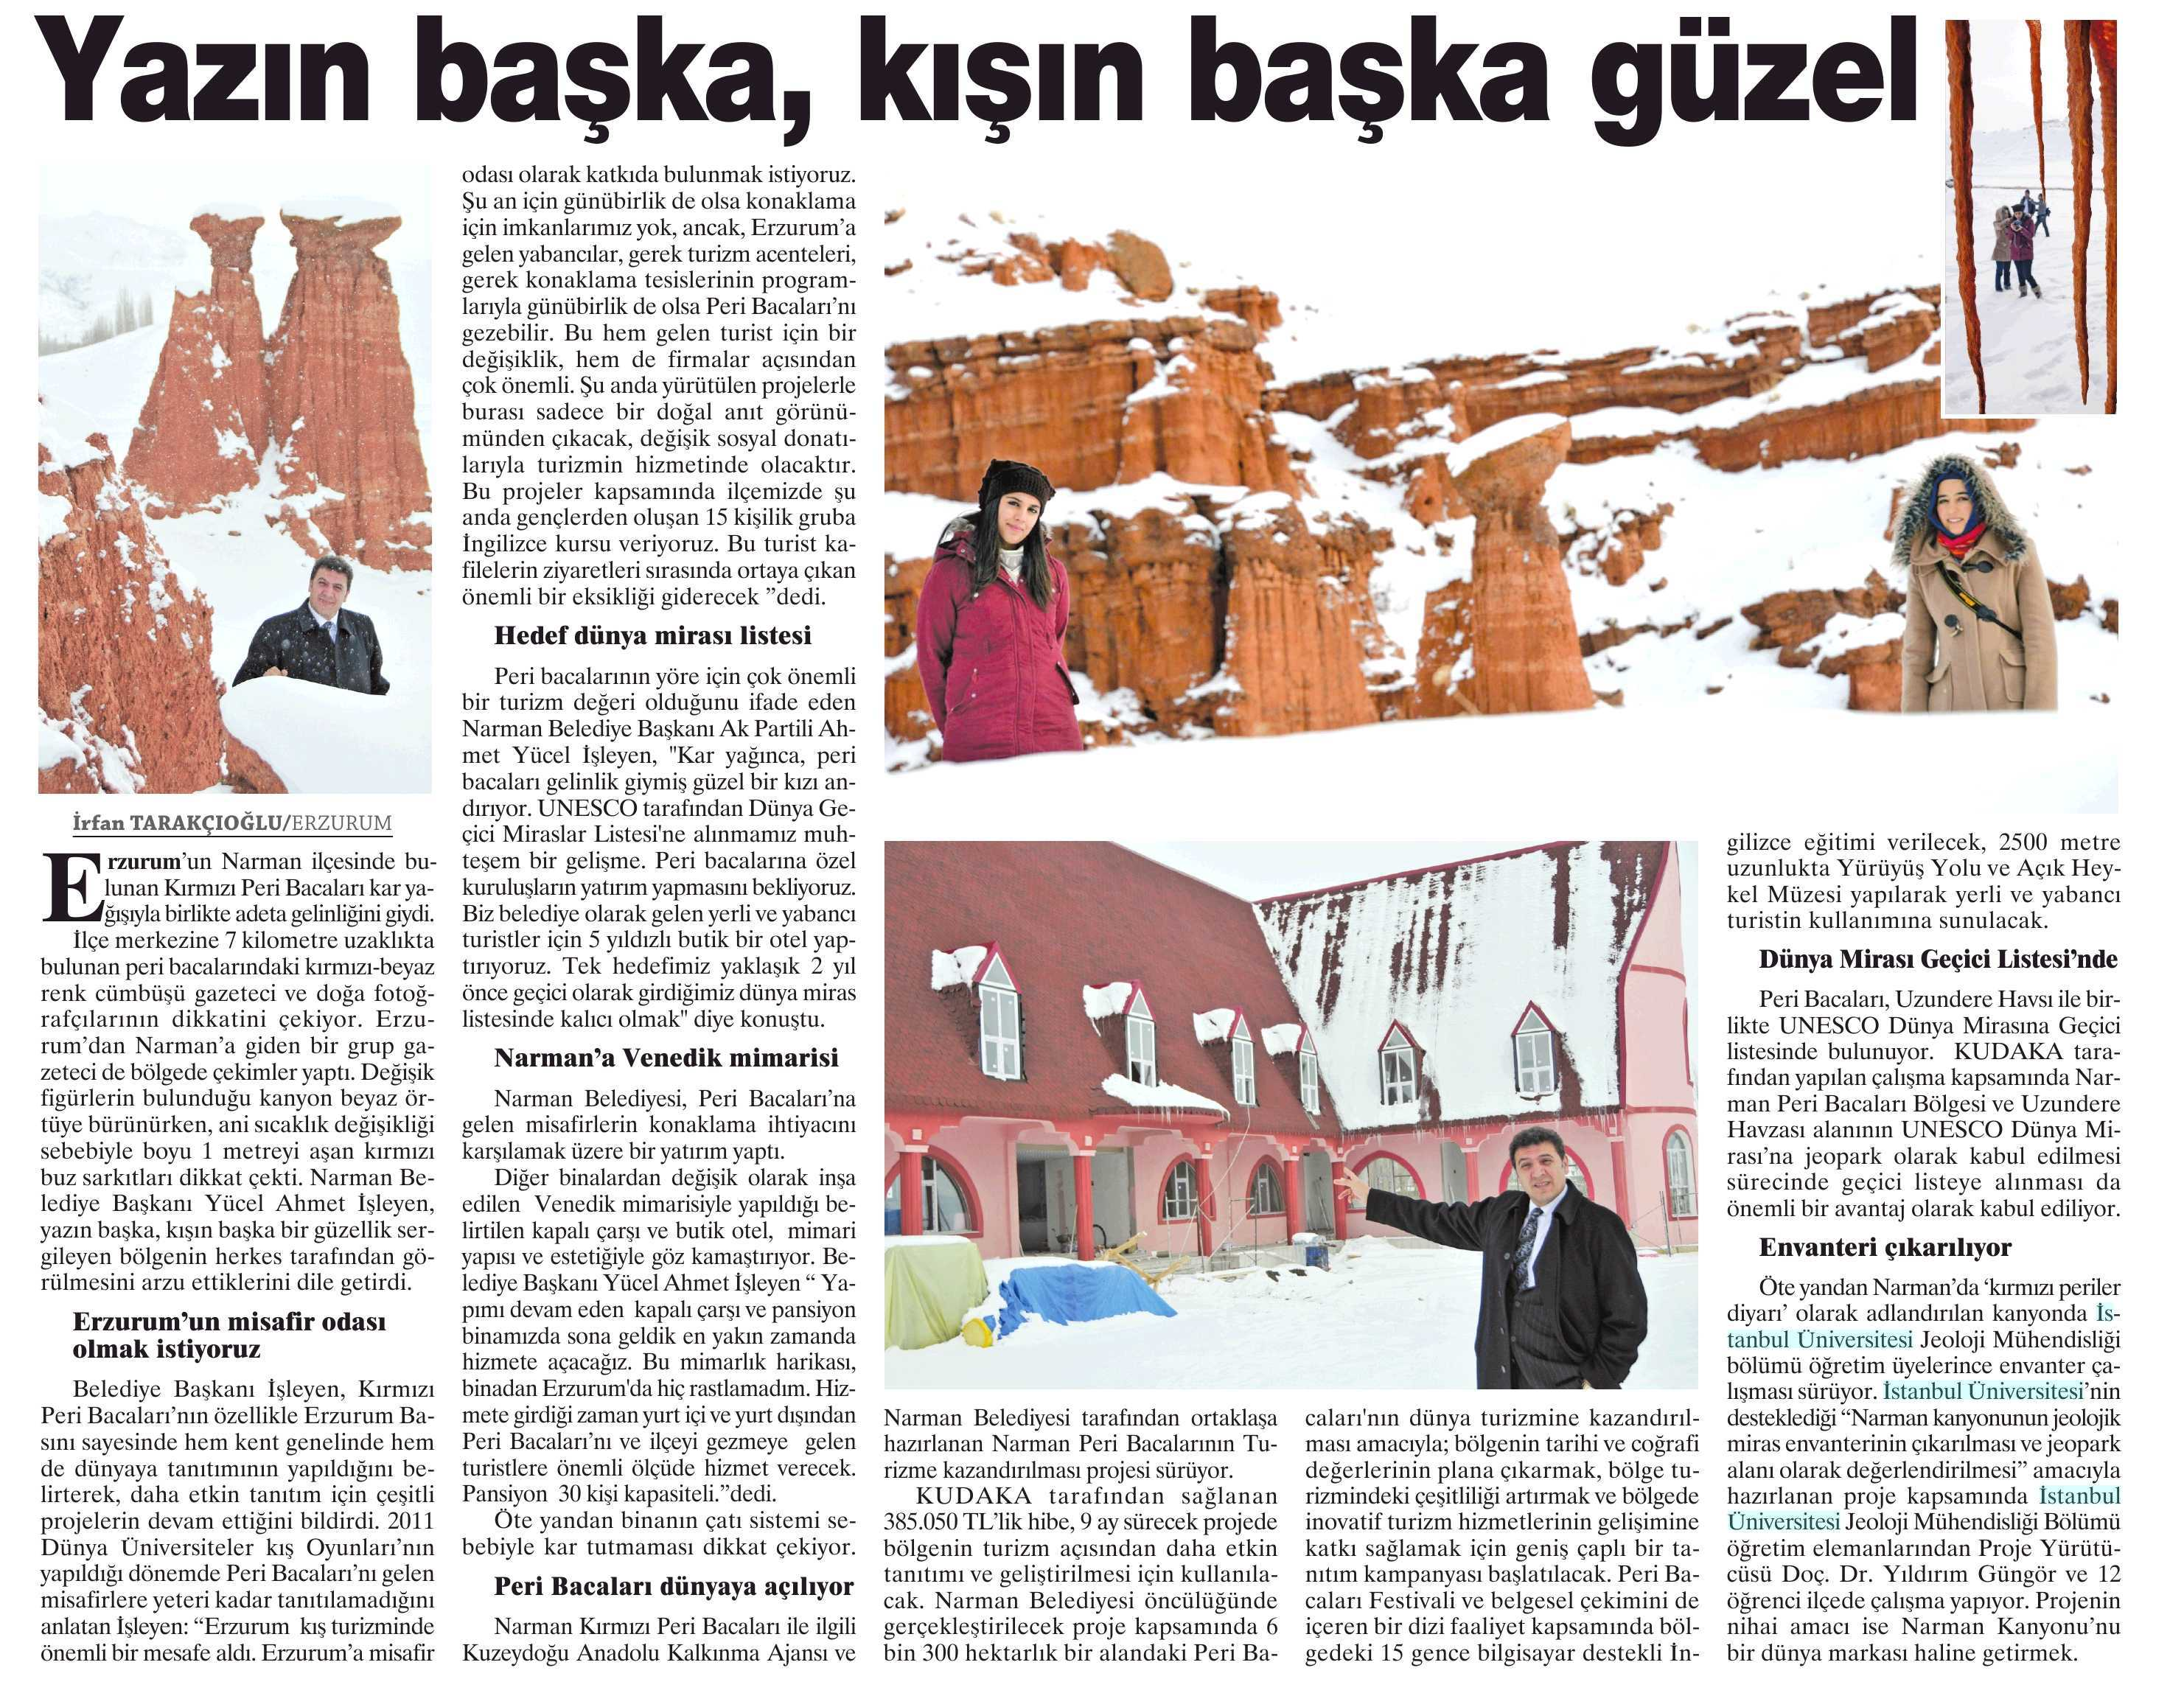 YAZIN BASKA, KISIN BASKA GÜZEL Yayın Adı : Erzurum Pusula Gazetesi Sayfa :